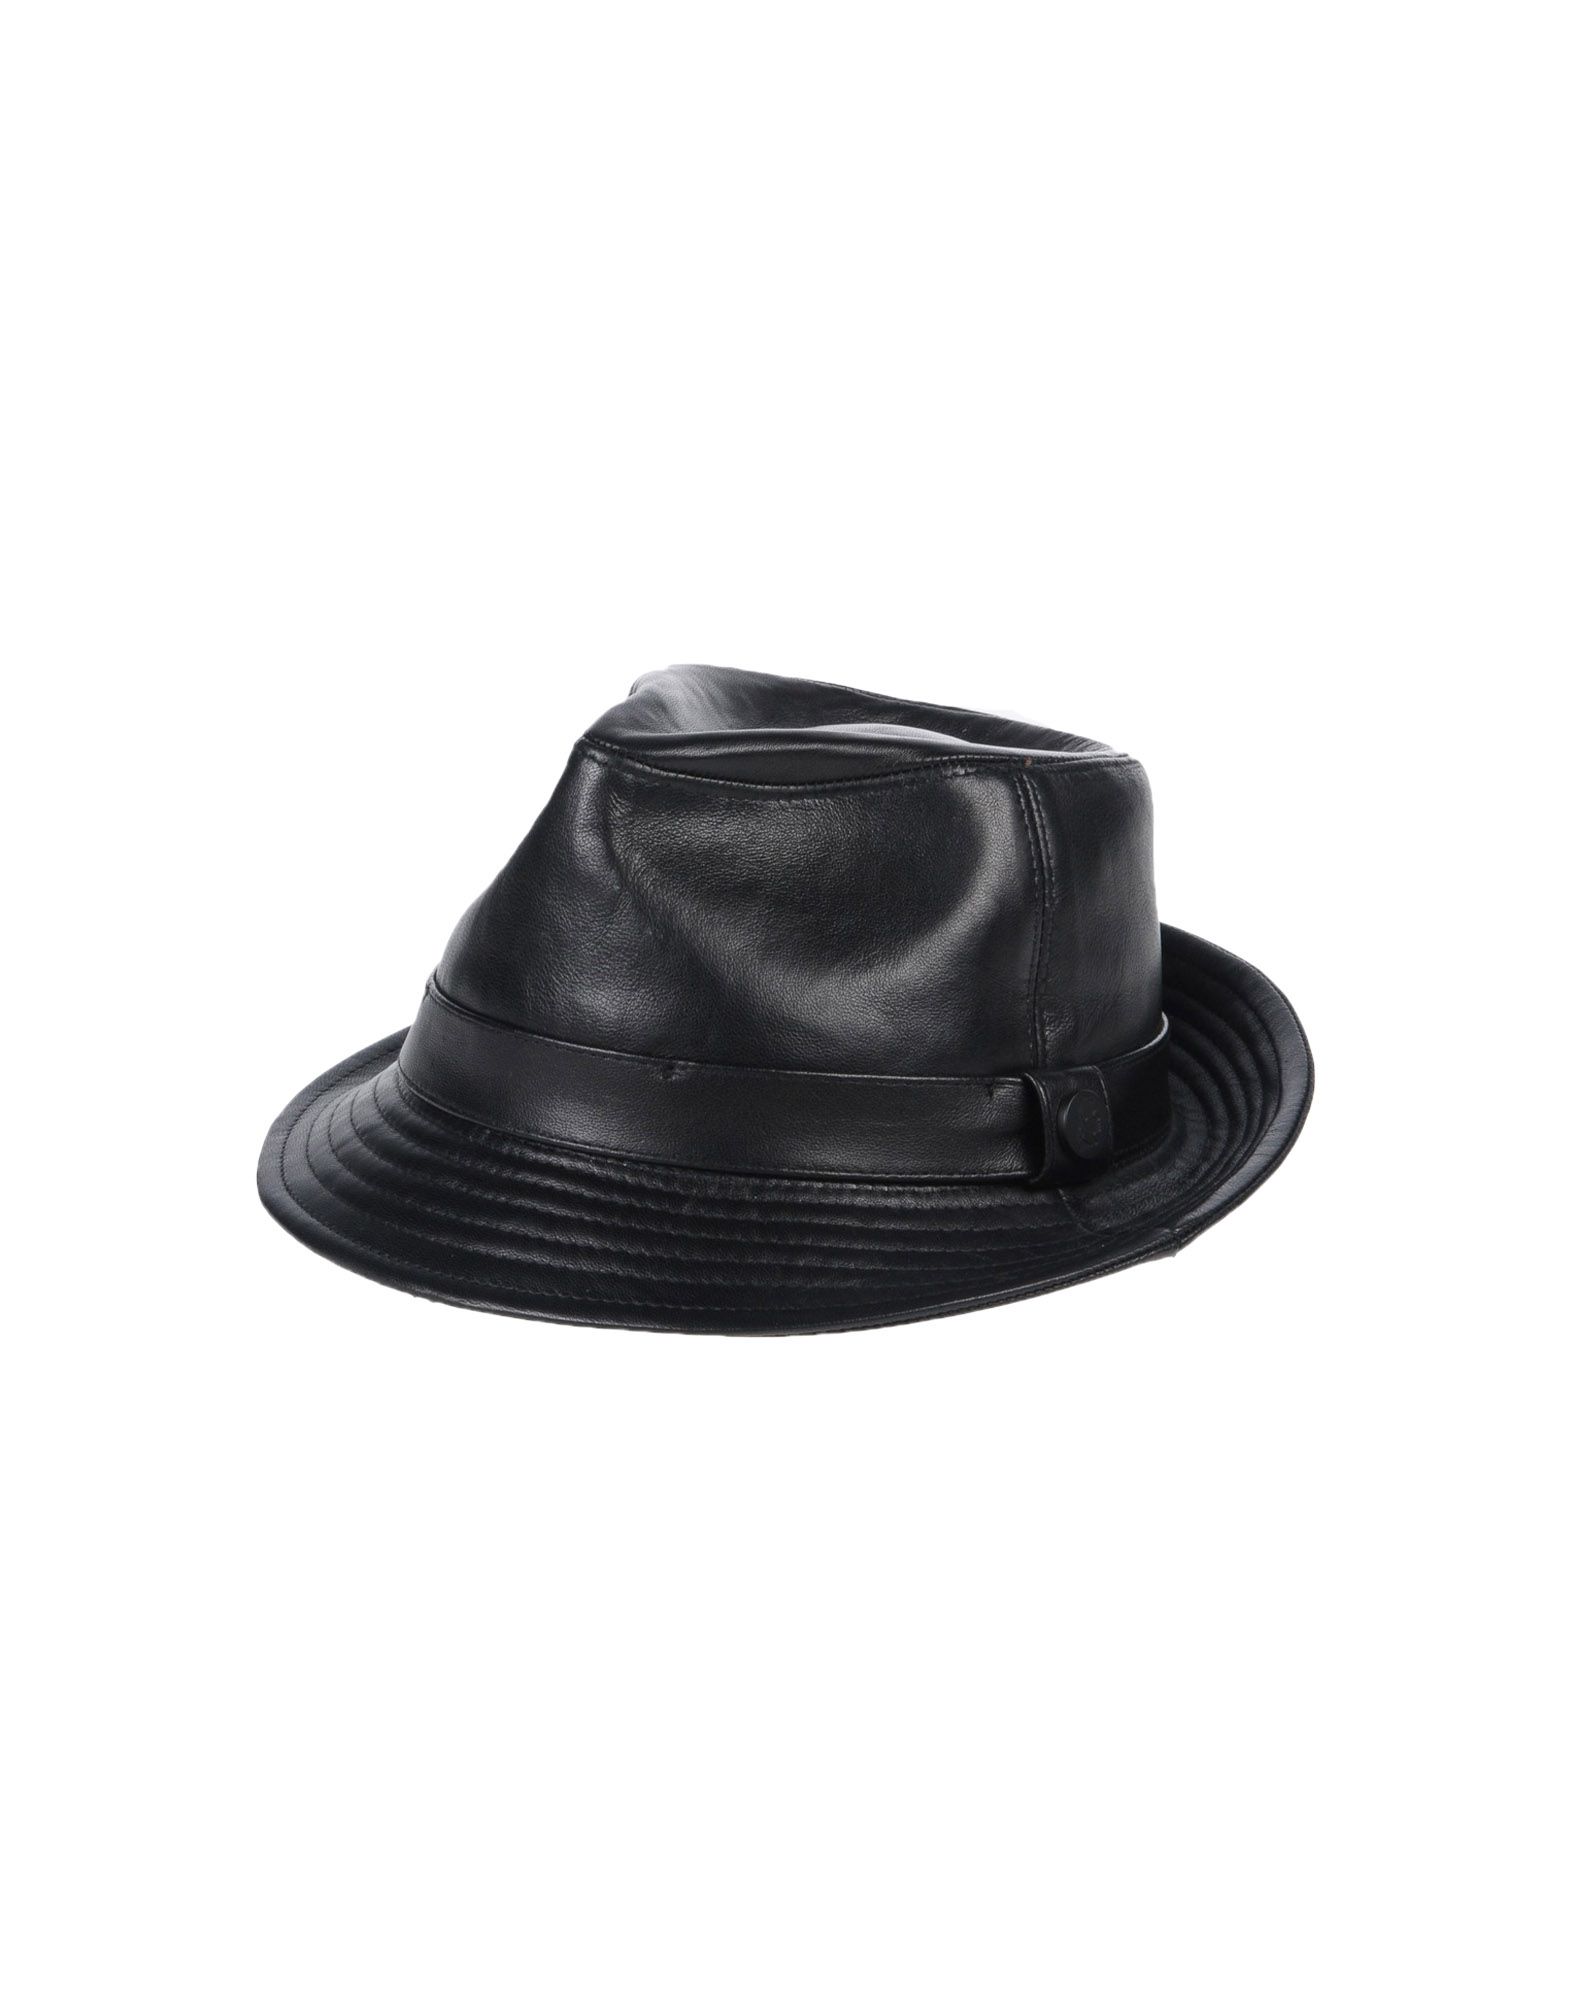 《送料無料》KARL レディース 帽子 ブラック 55 牛革 100%